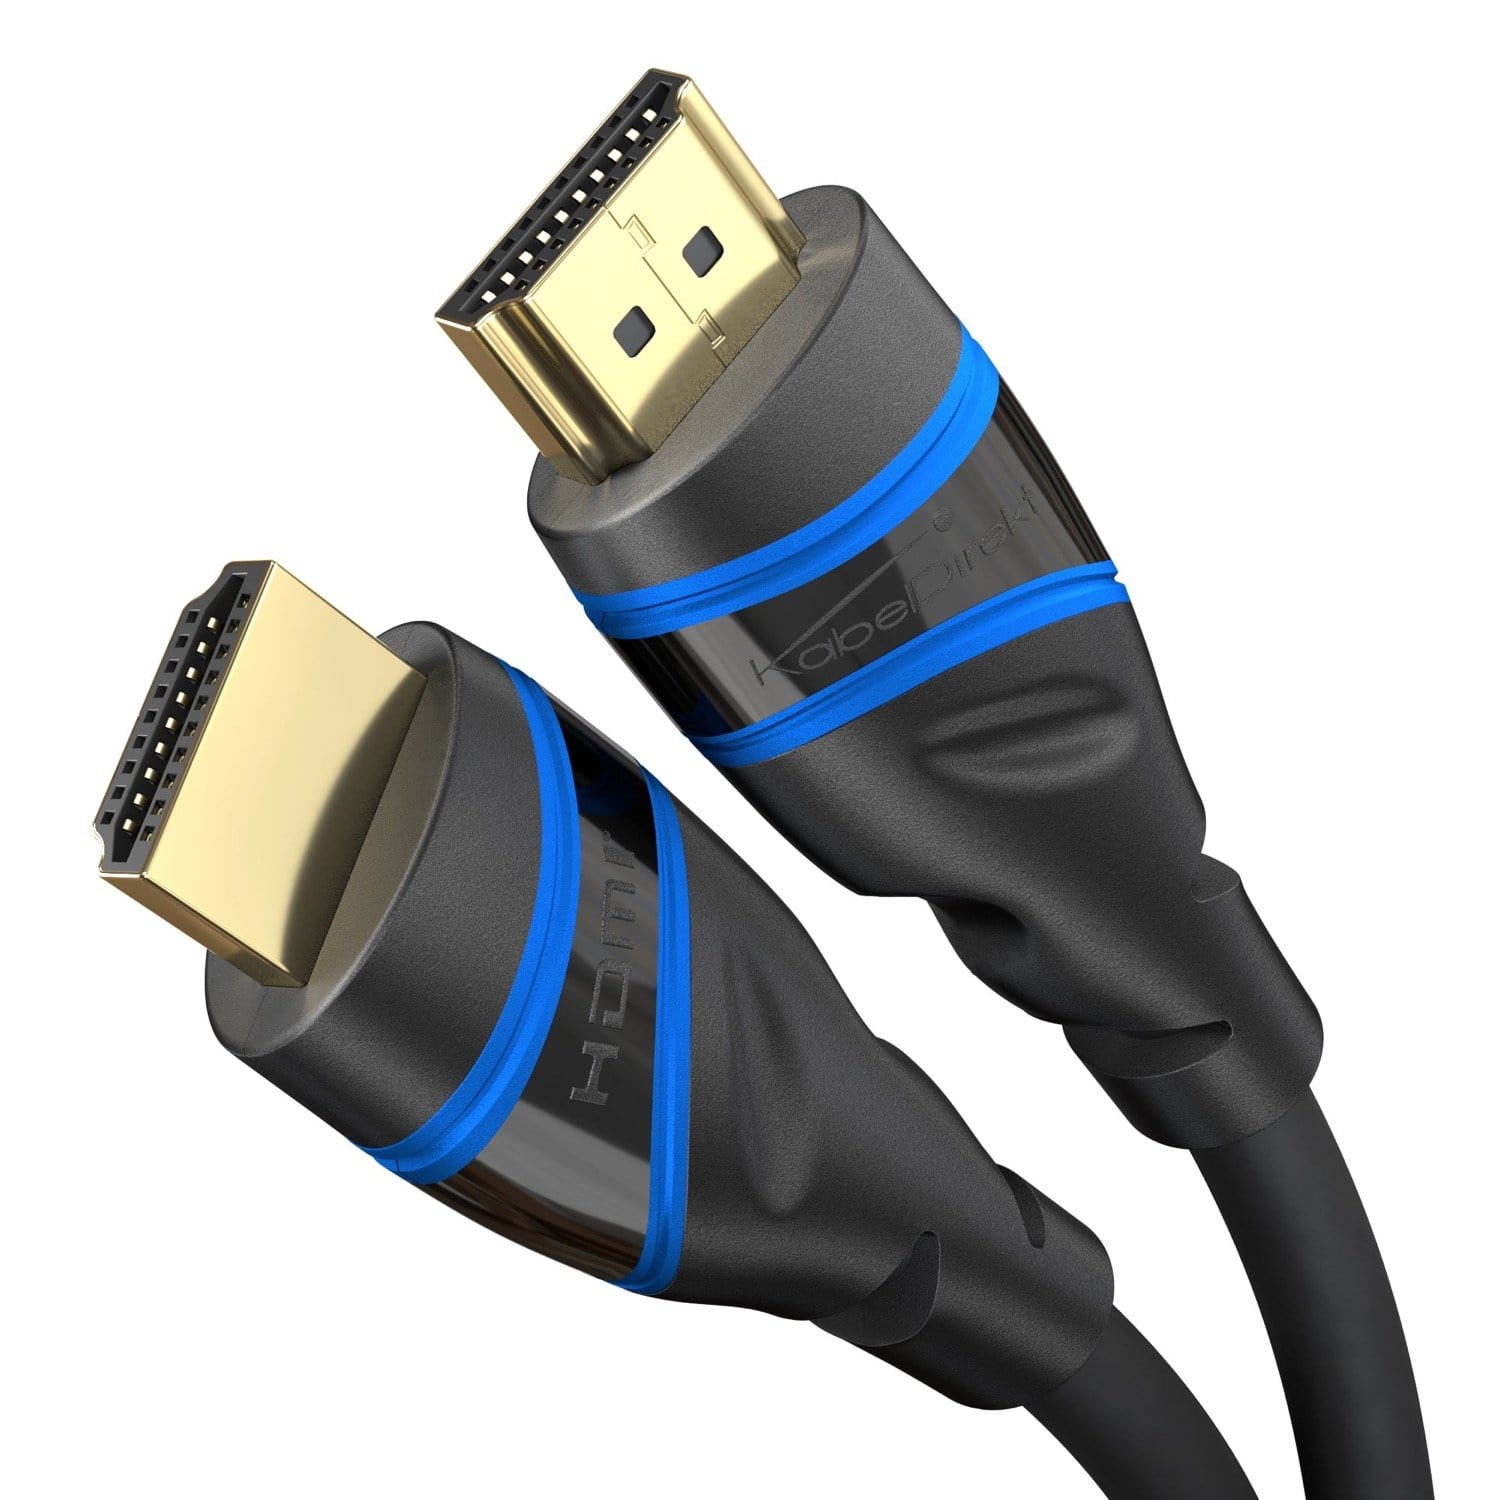 HDMI Kabel günstig online kaufen - Millionenfach verkauft »KabelDirekt